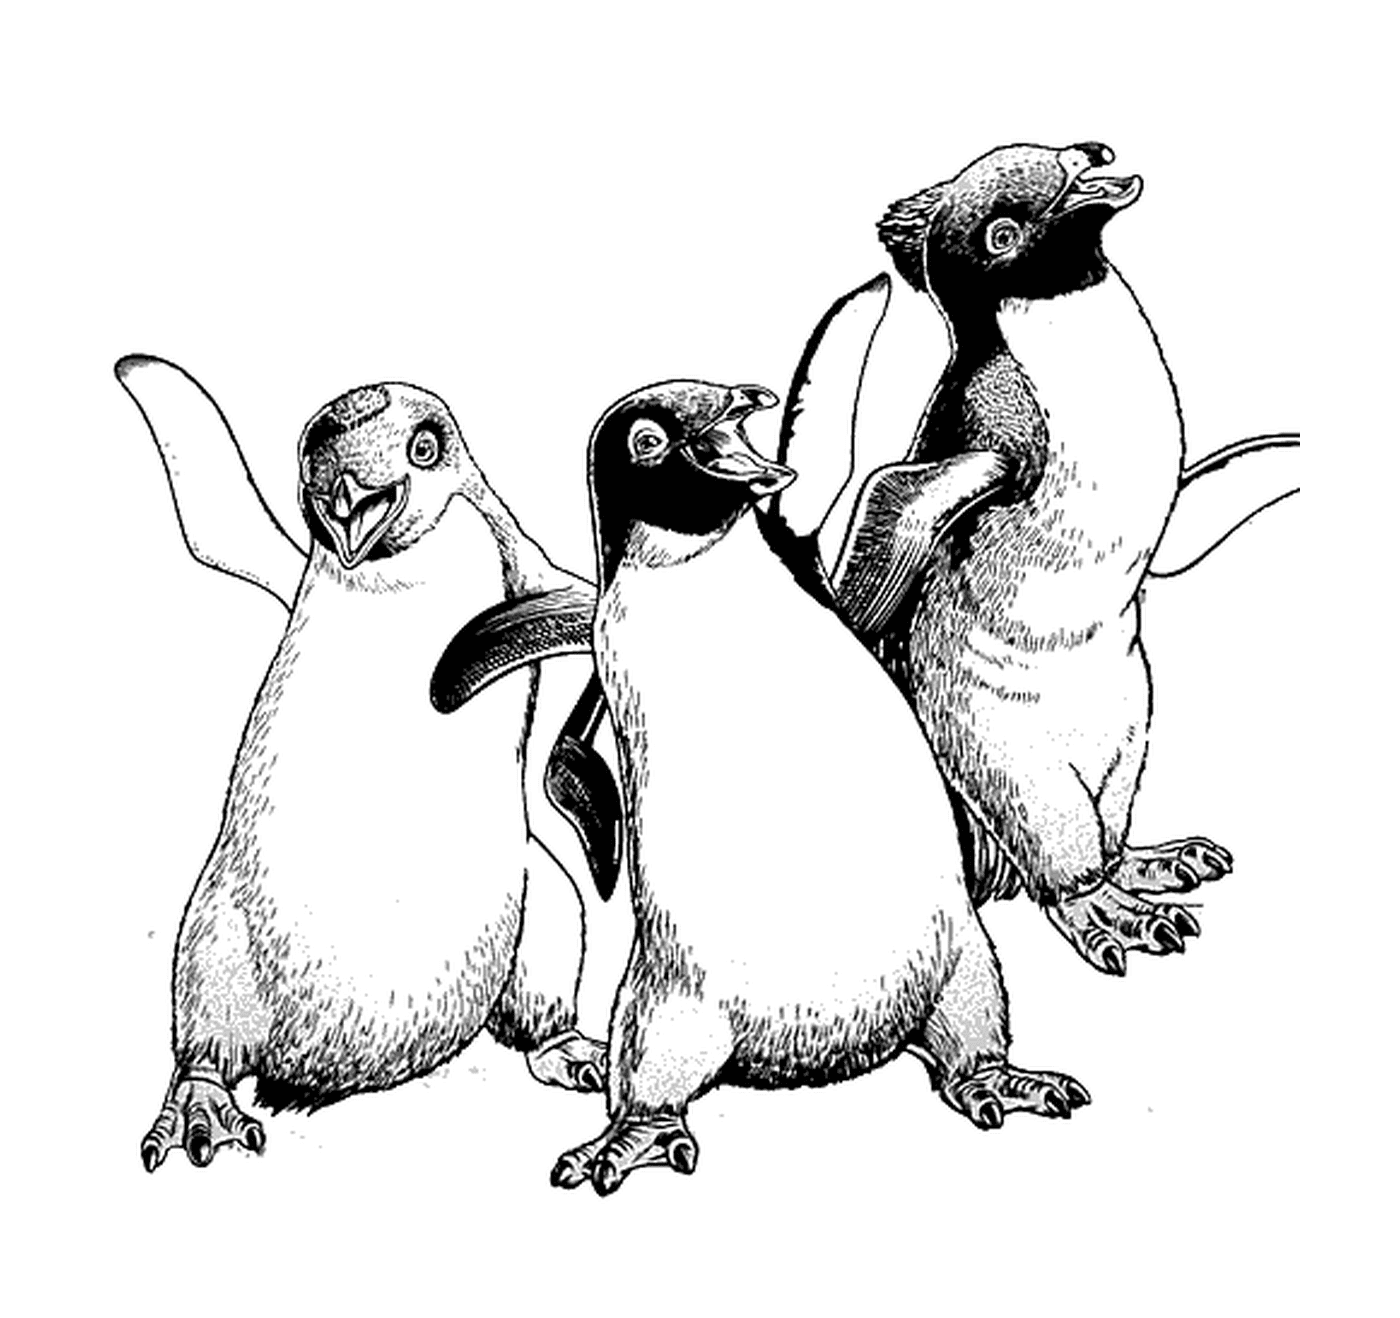  一组三只企鹅并肩生存 